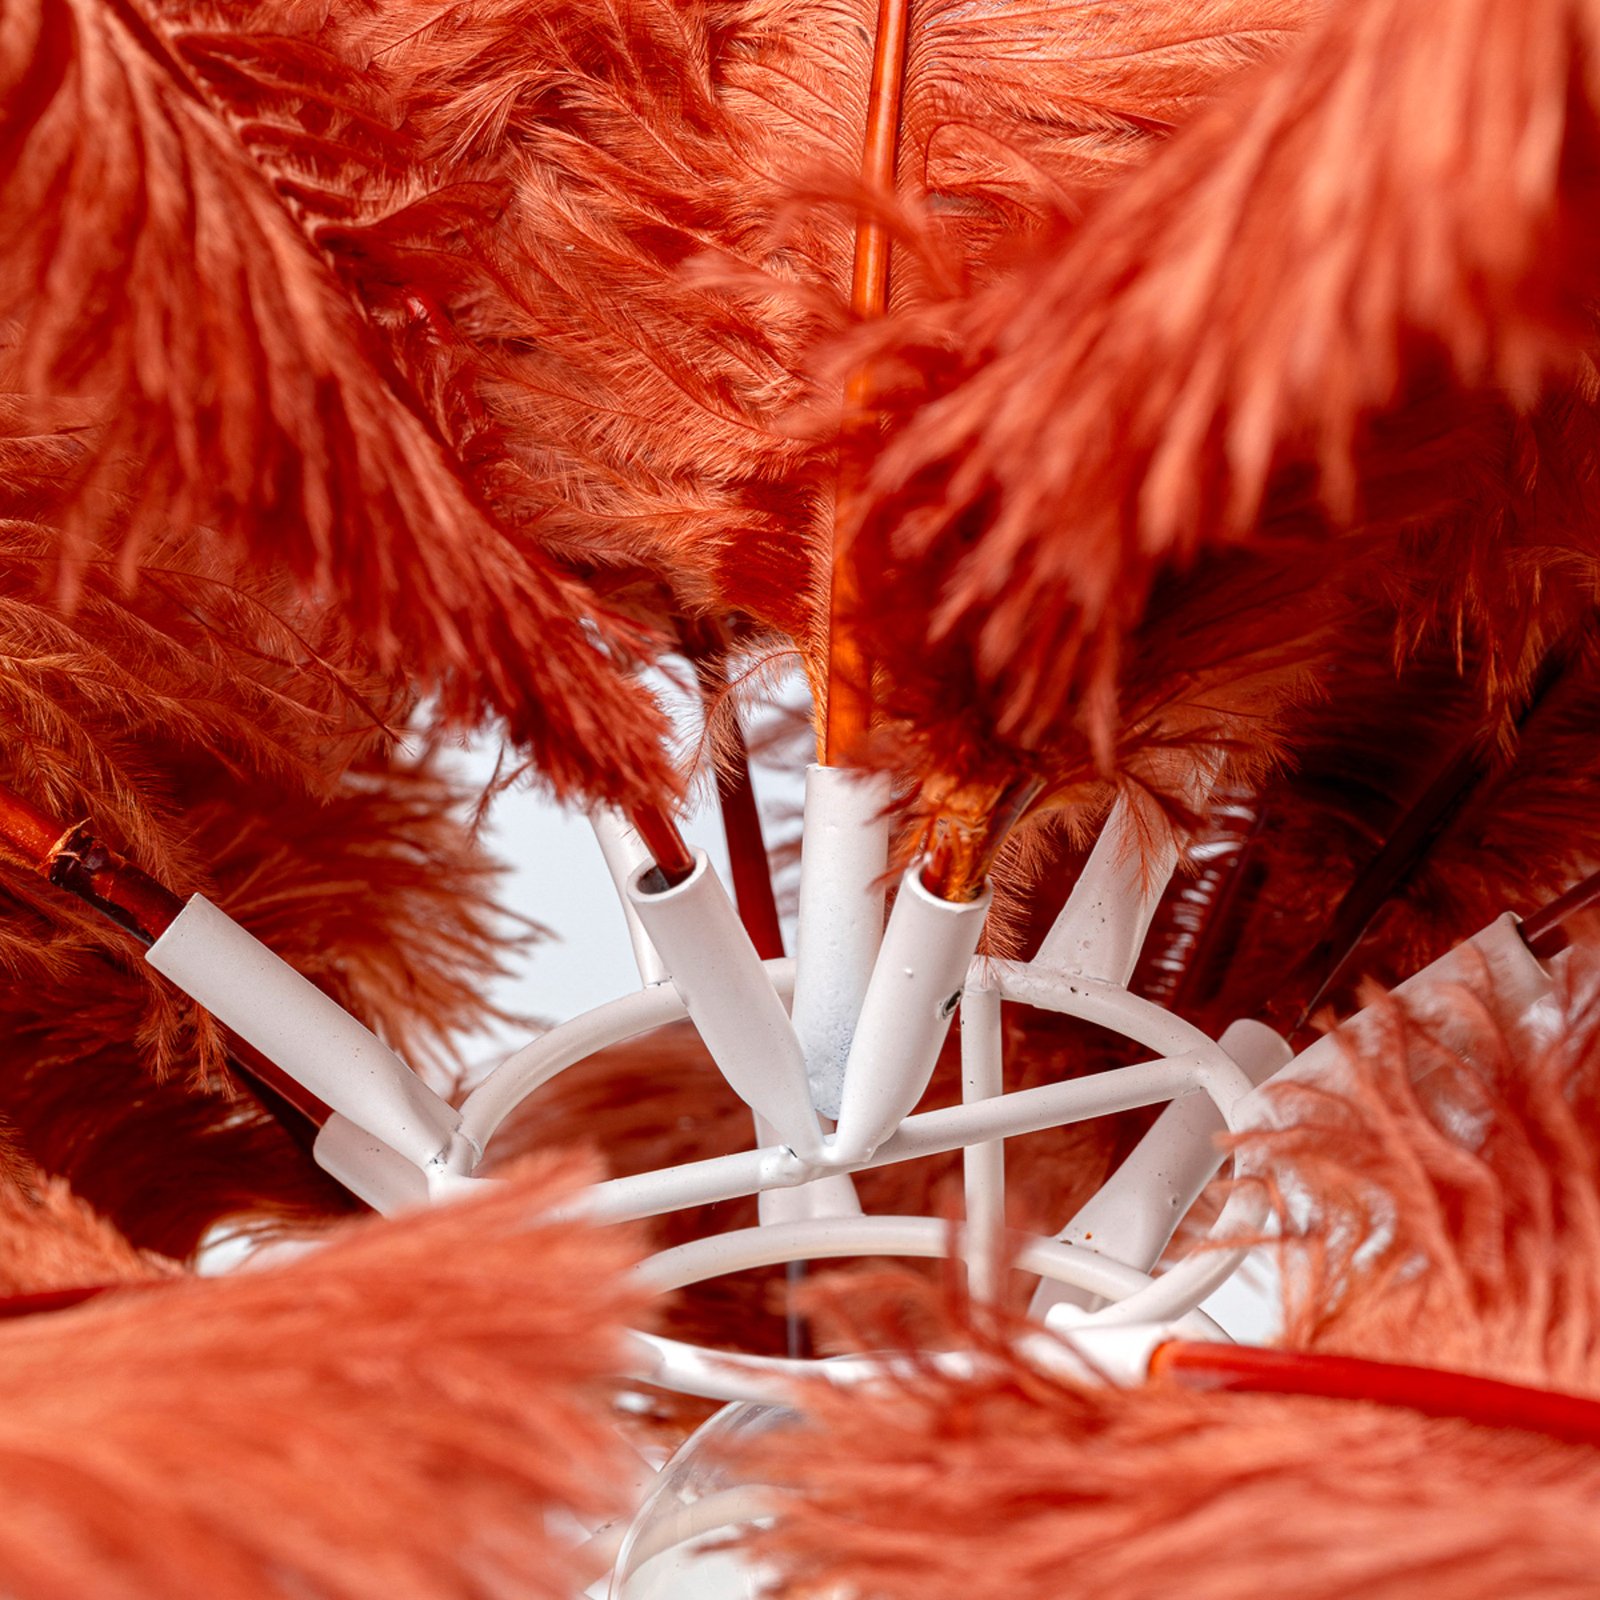 KARE Feather Palm bordslampa med fjädrar, roströd